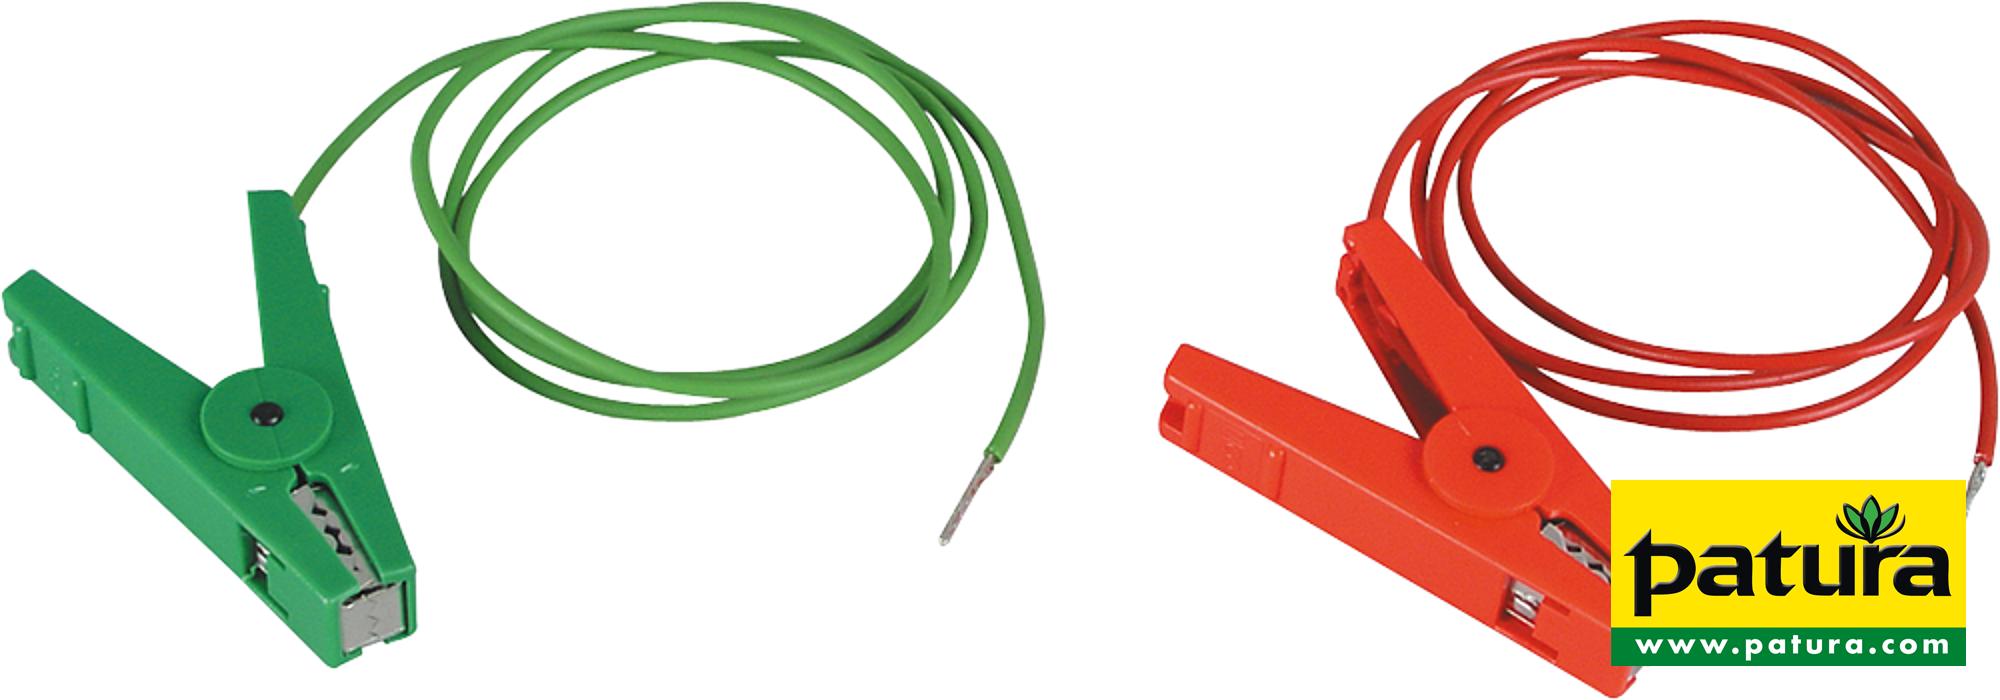 Erdanschlusskabel, grün, Edelstahl-Klemme und 3 mm Stift (1 Stück / Pack)